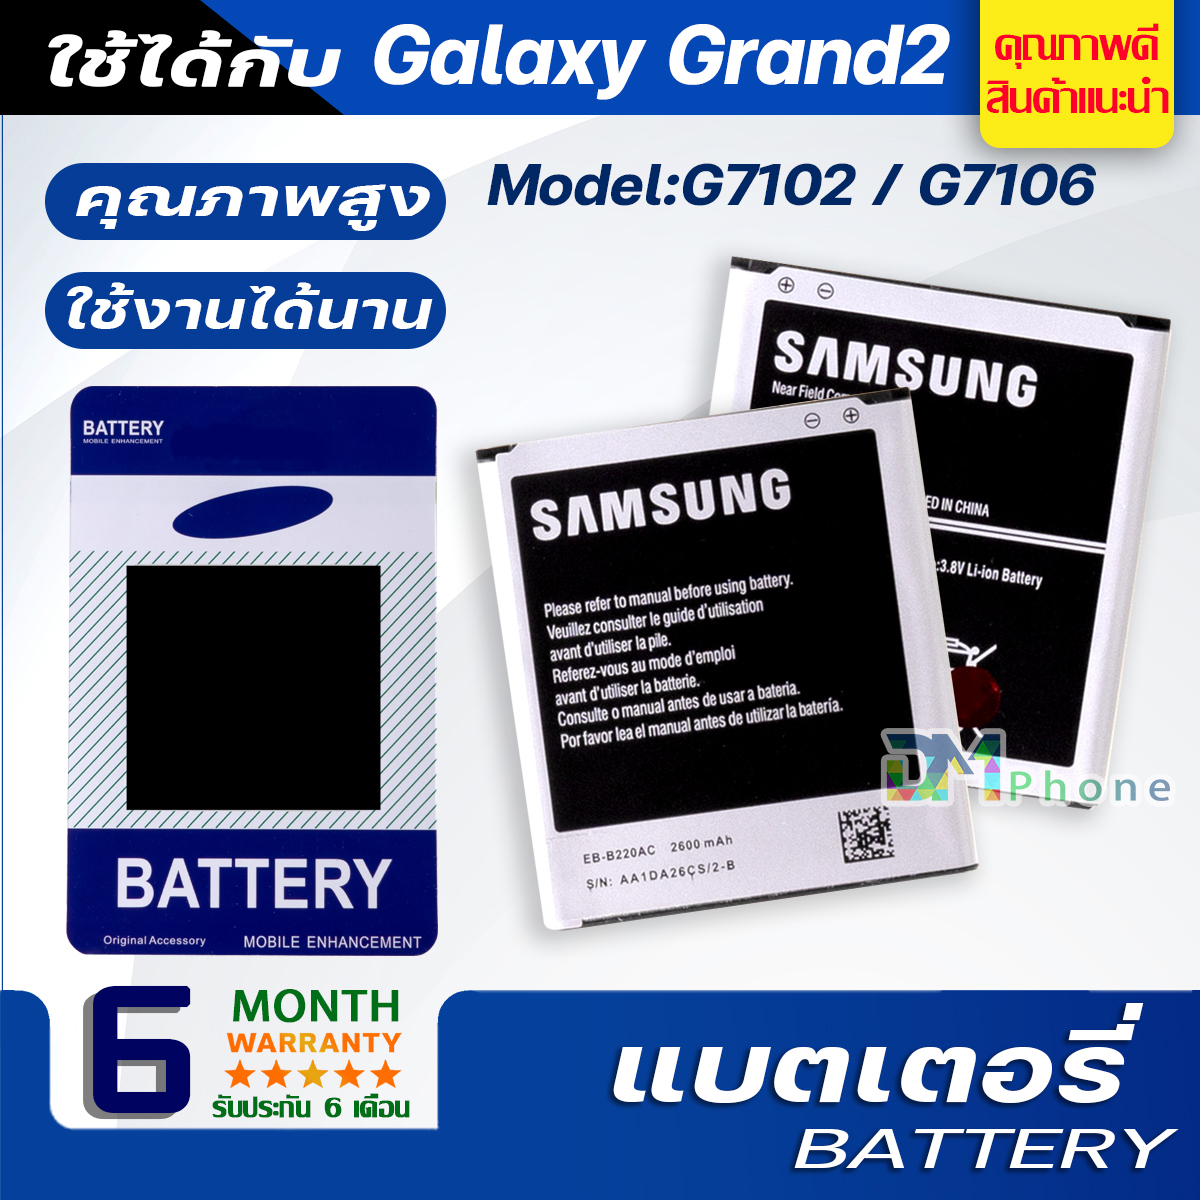 แบตเตอรี่ samsung galaxy แกรนด์ 2 / Grand 2 / G7102 / G7106 แบต Battery สำหรับ ซัมซุง กาแลคซี่ แกรนด์ 2,Grand 2,G7102,G7106 มีประกัน 6 เดือน